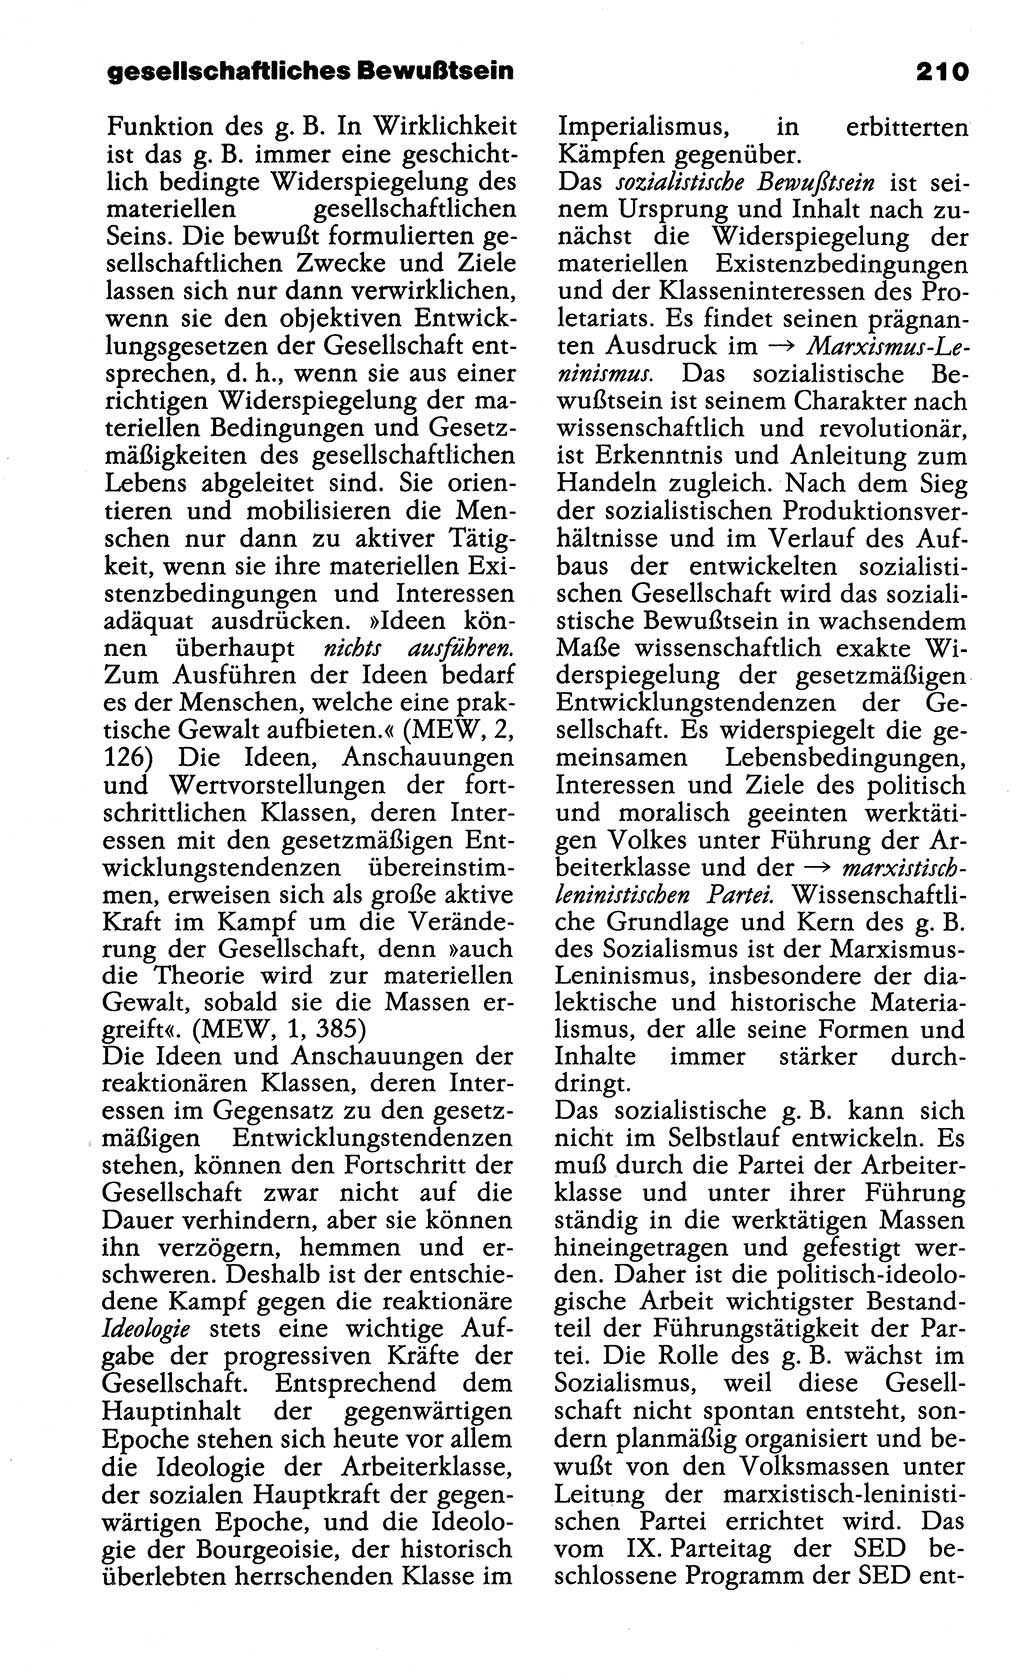 Wörterbuch der marxistisch-leninistischen Philosophie [Deutsche Demokratische Republik (DDR)] 1985, Seite 210 (Wb. ML Phil. DDR 1985, S. 210)